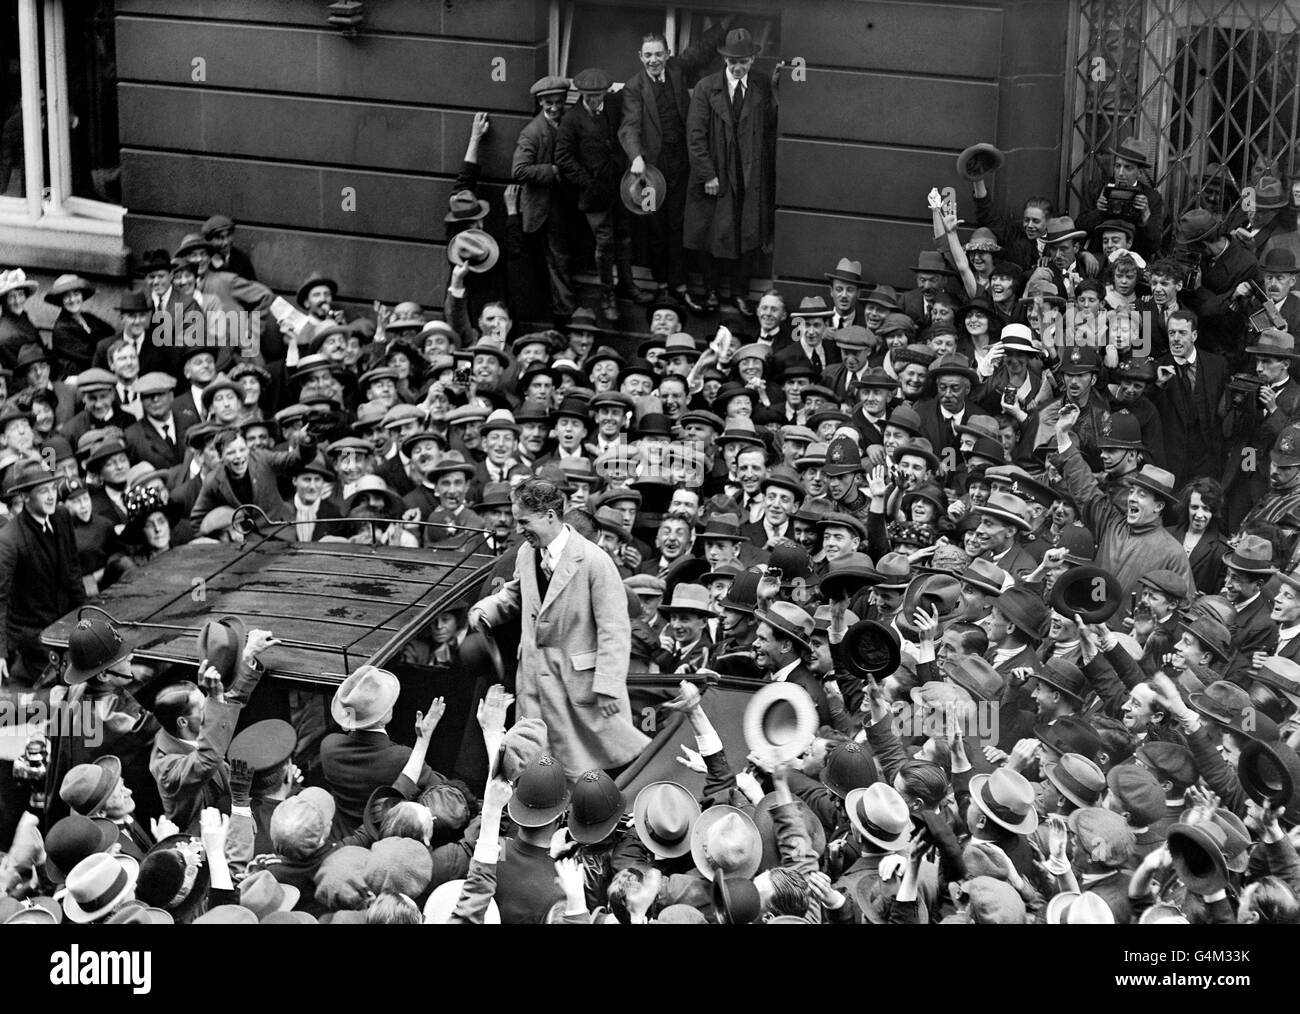 Charlie Chaplin, la star britannique de l'écran silencieux, s'adresse à une foule énorme devant l'hôtel Ritz de Londres. Banque D'Images